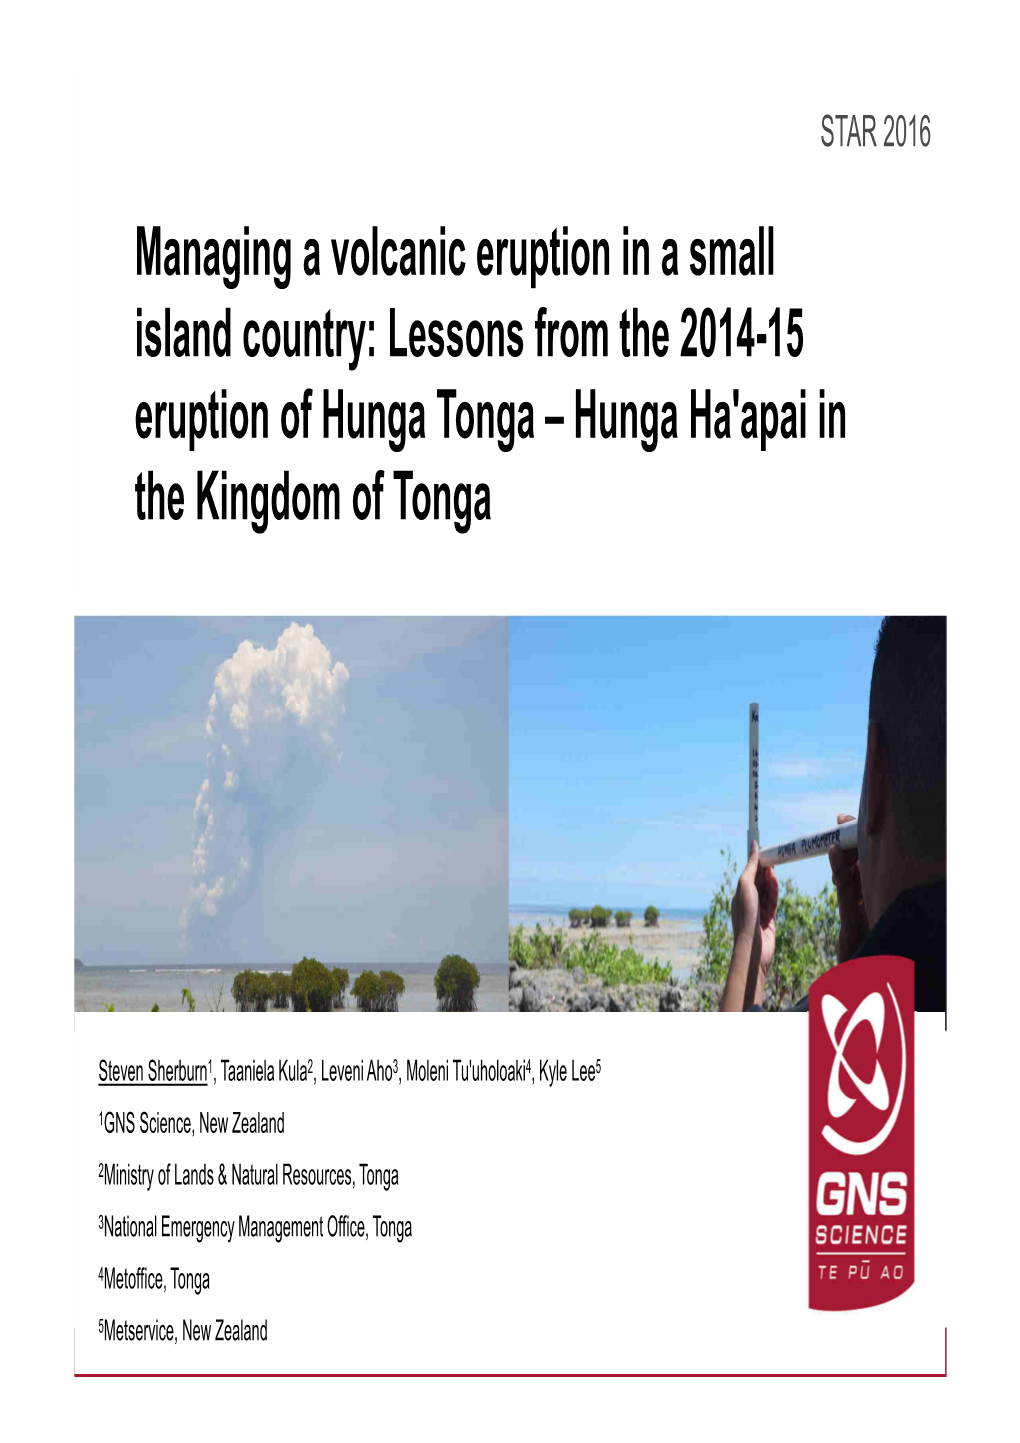 Session2a 5 Lessonslearned Hunga-Tonga Eruption